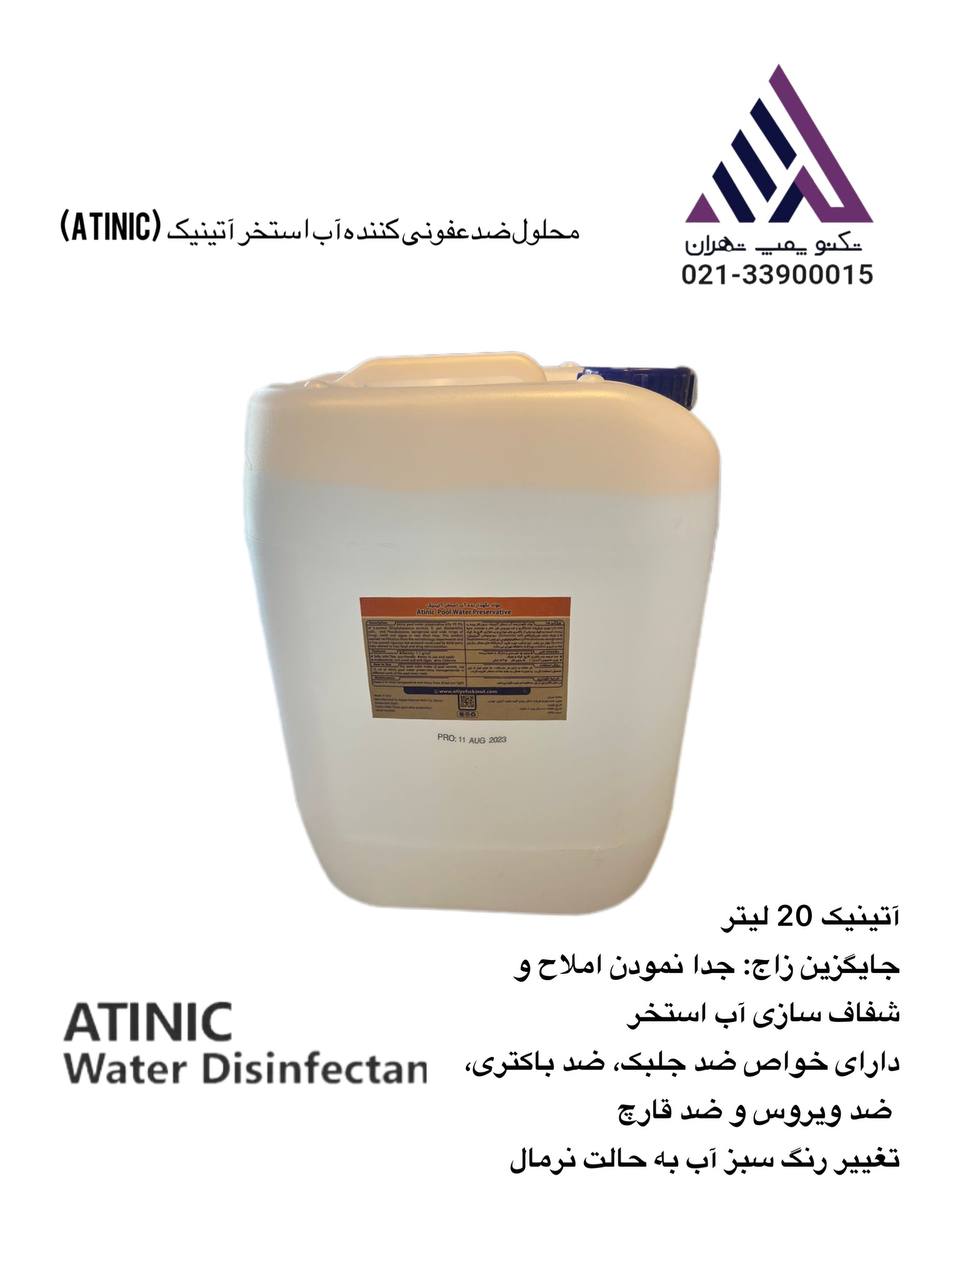 محلول ضدعفونی کننده آب استخر آتینیک  20 لیتر (Atinic)